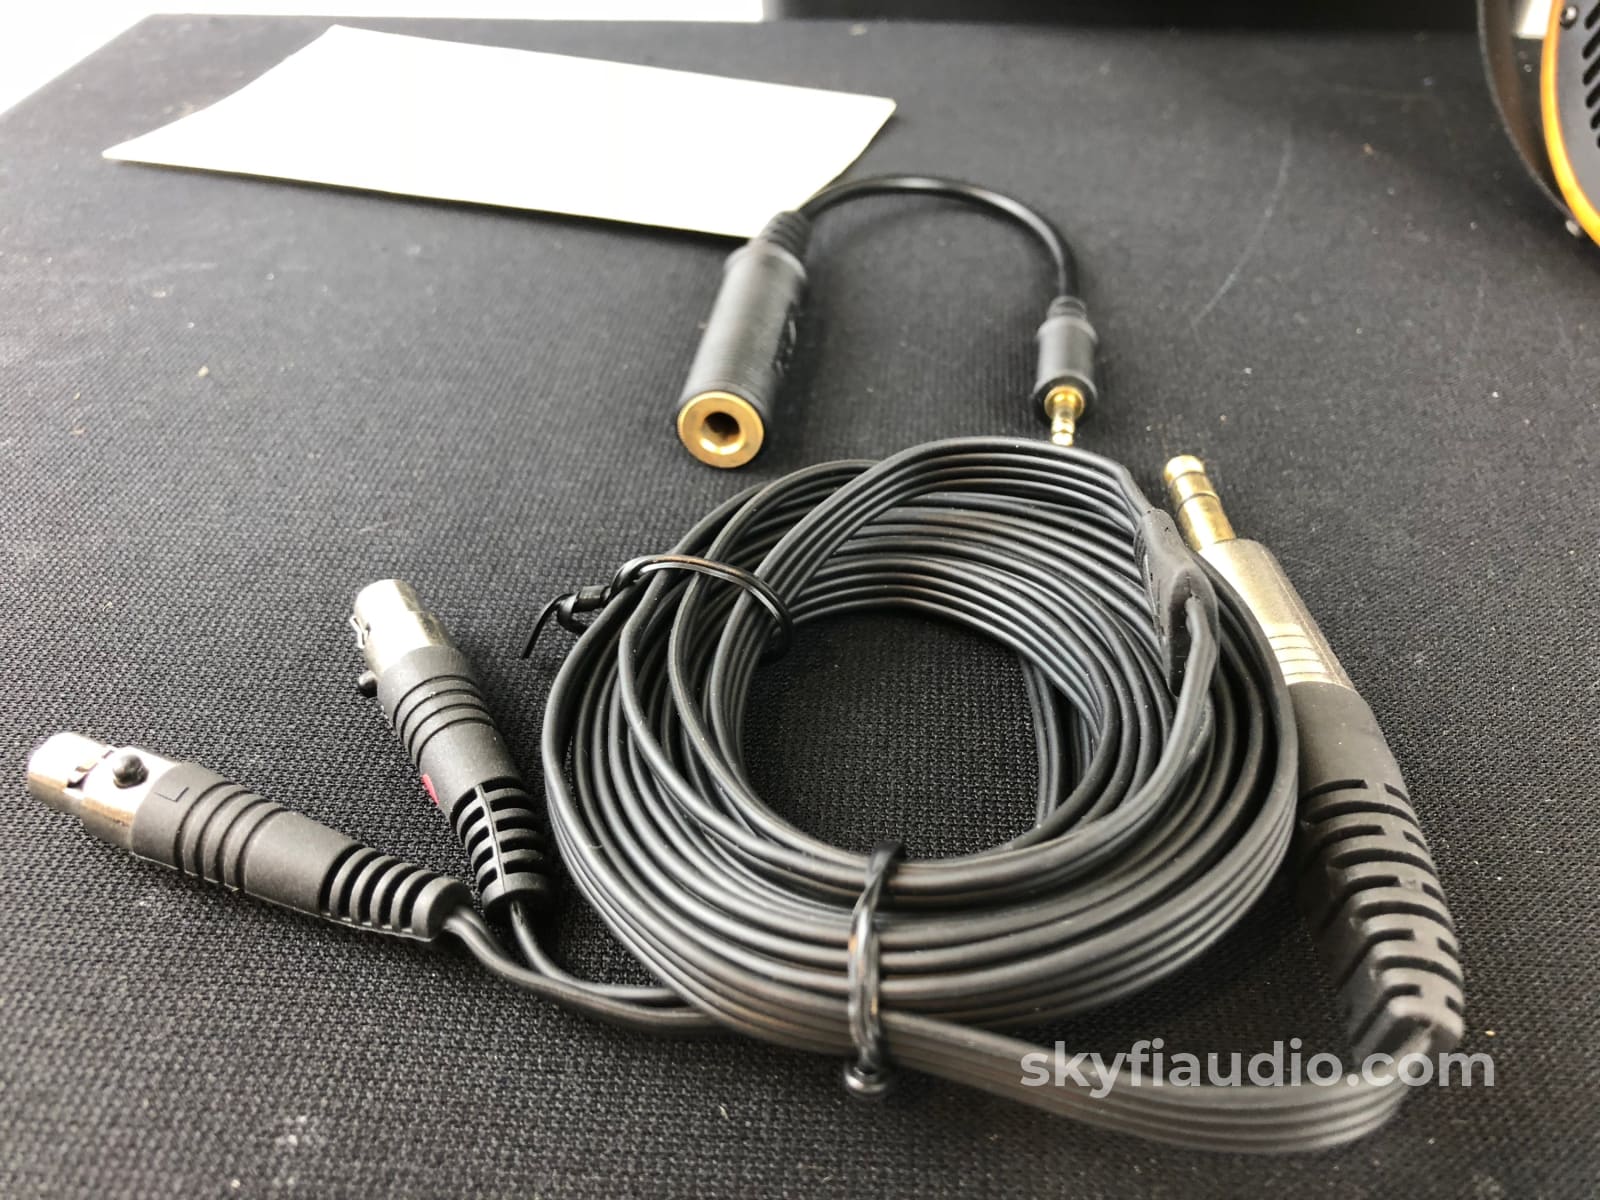 Audeze Lcd-2 Headphones - New In Open Box Complete